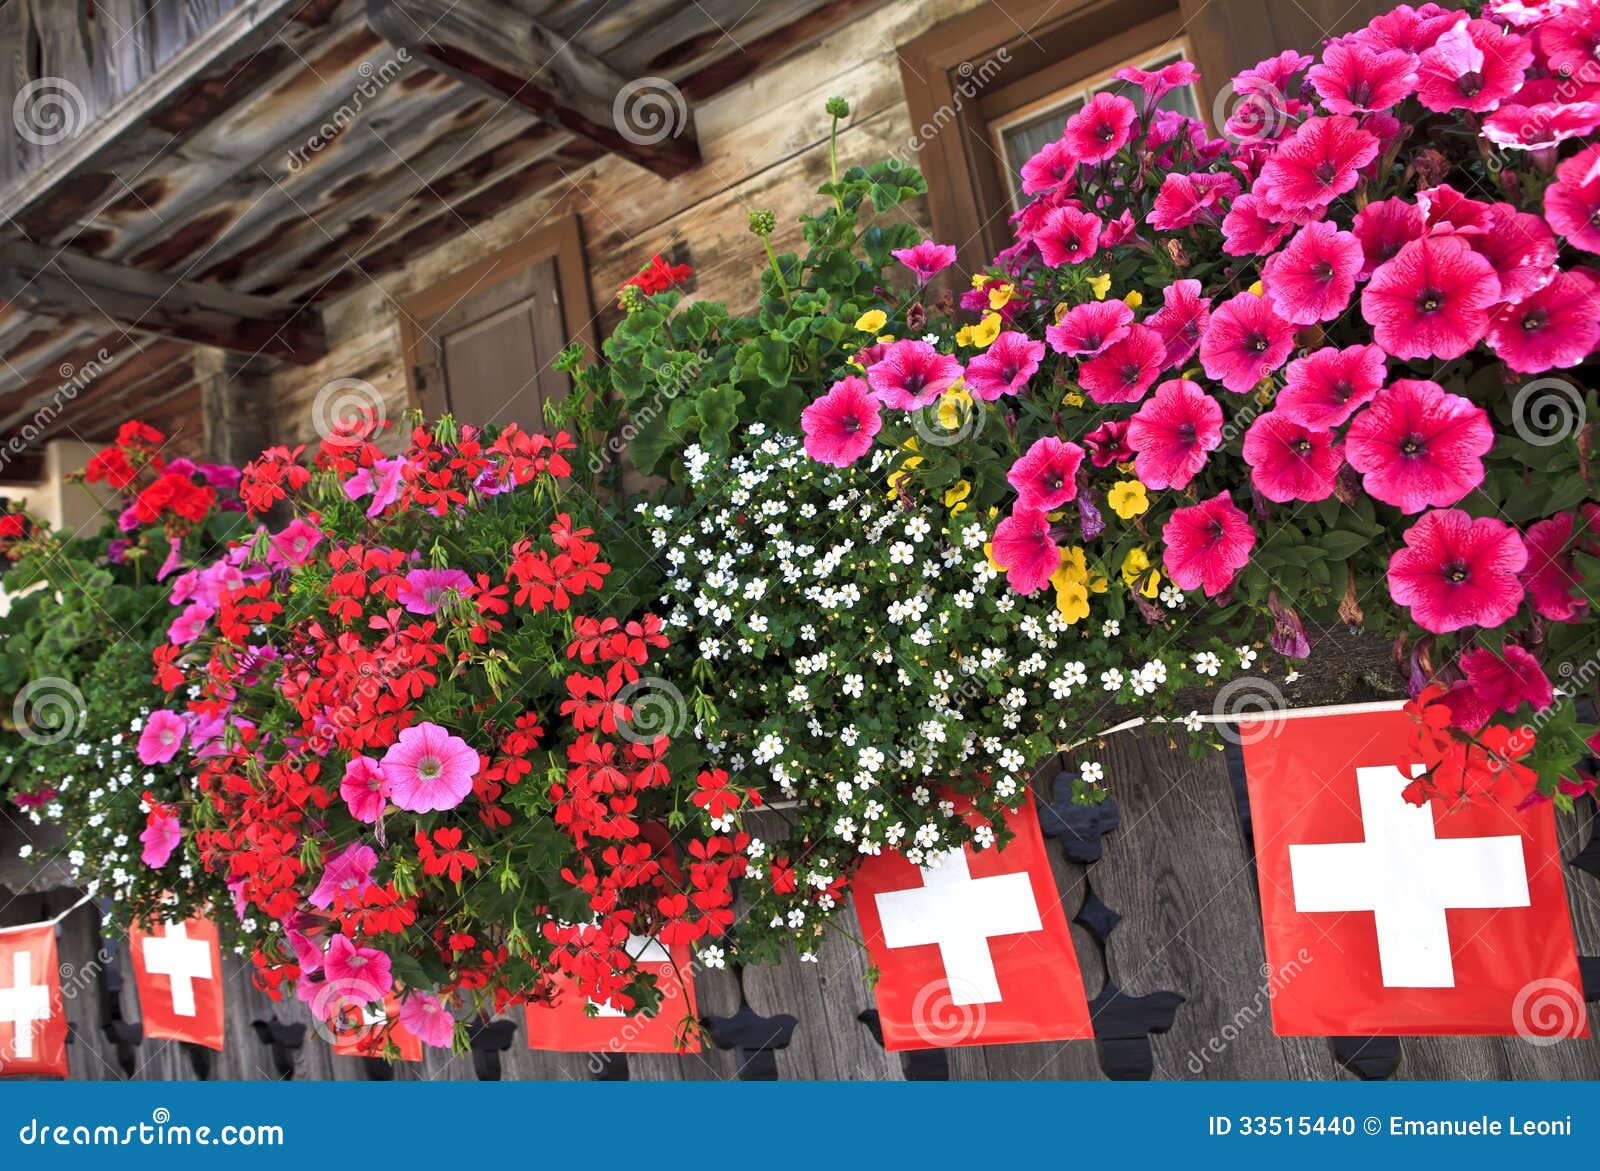 balcon-et-drapeaux-sur-le-chalet-dans-les-alpes-suisses-33515440.jpg